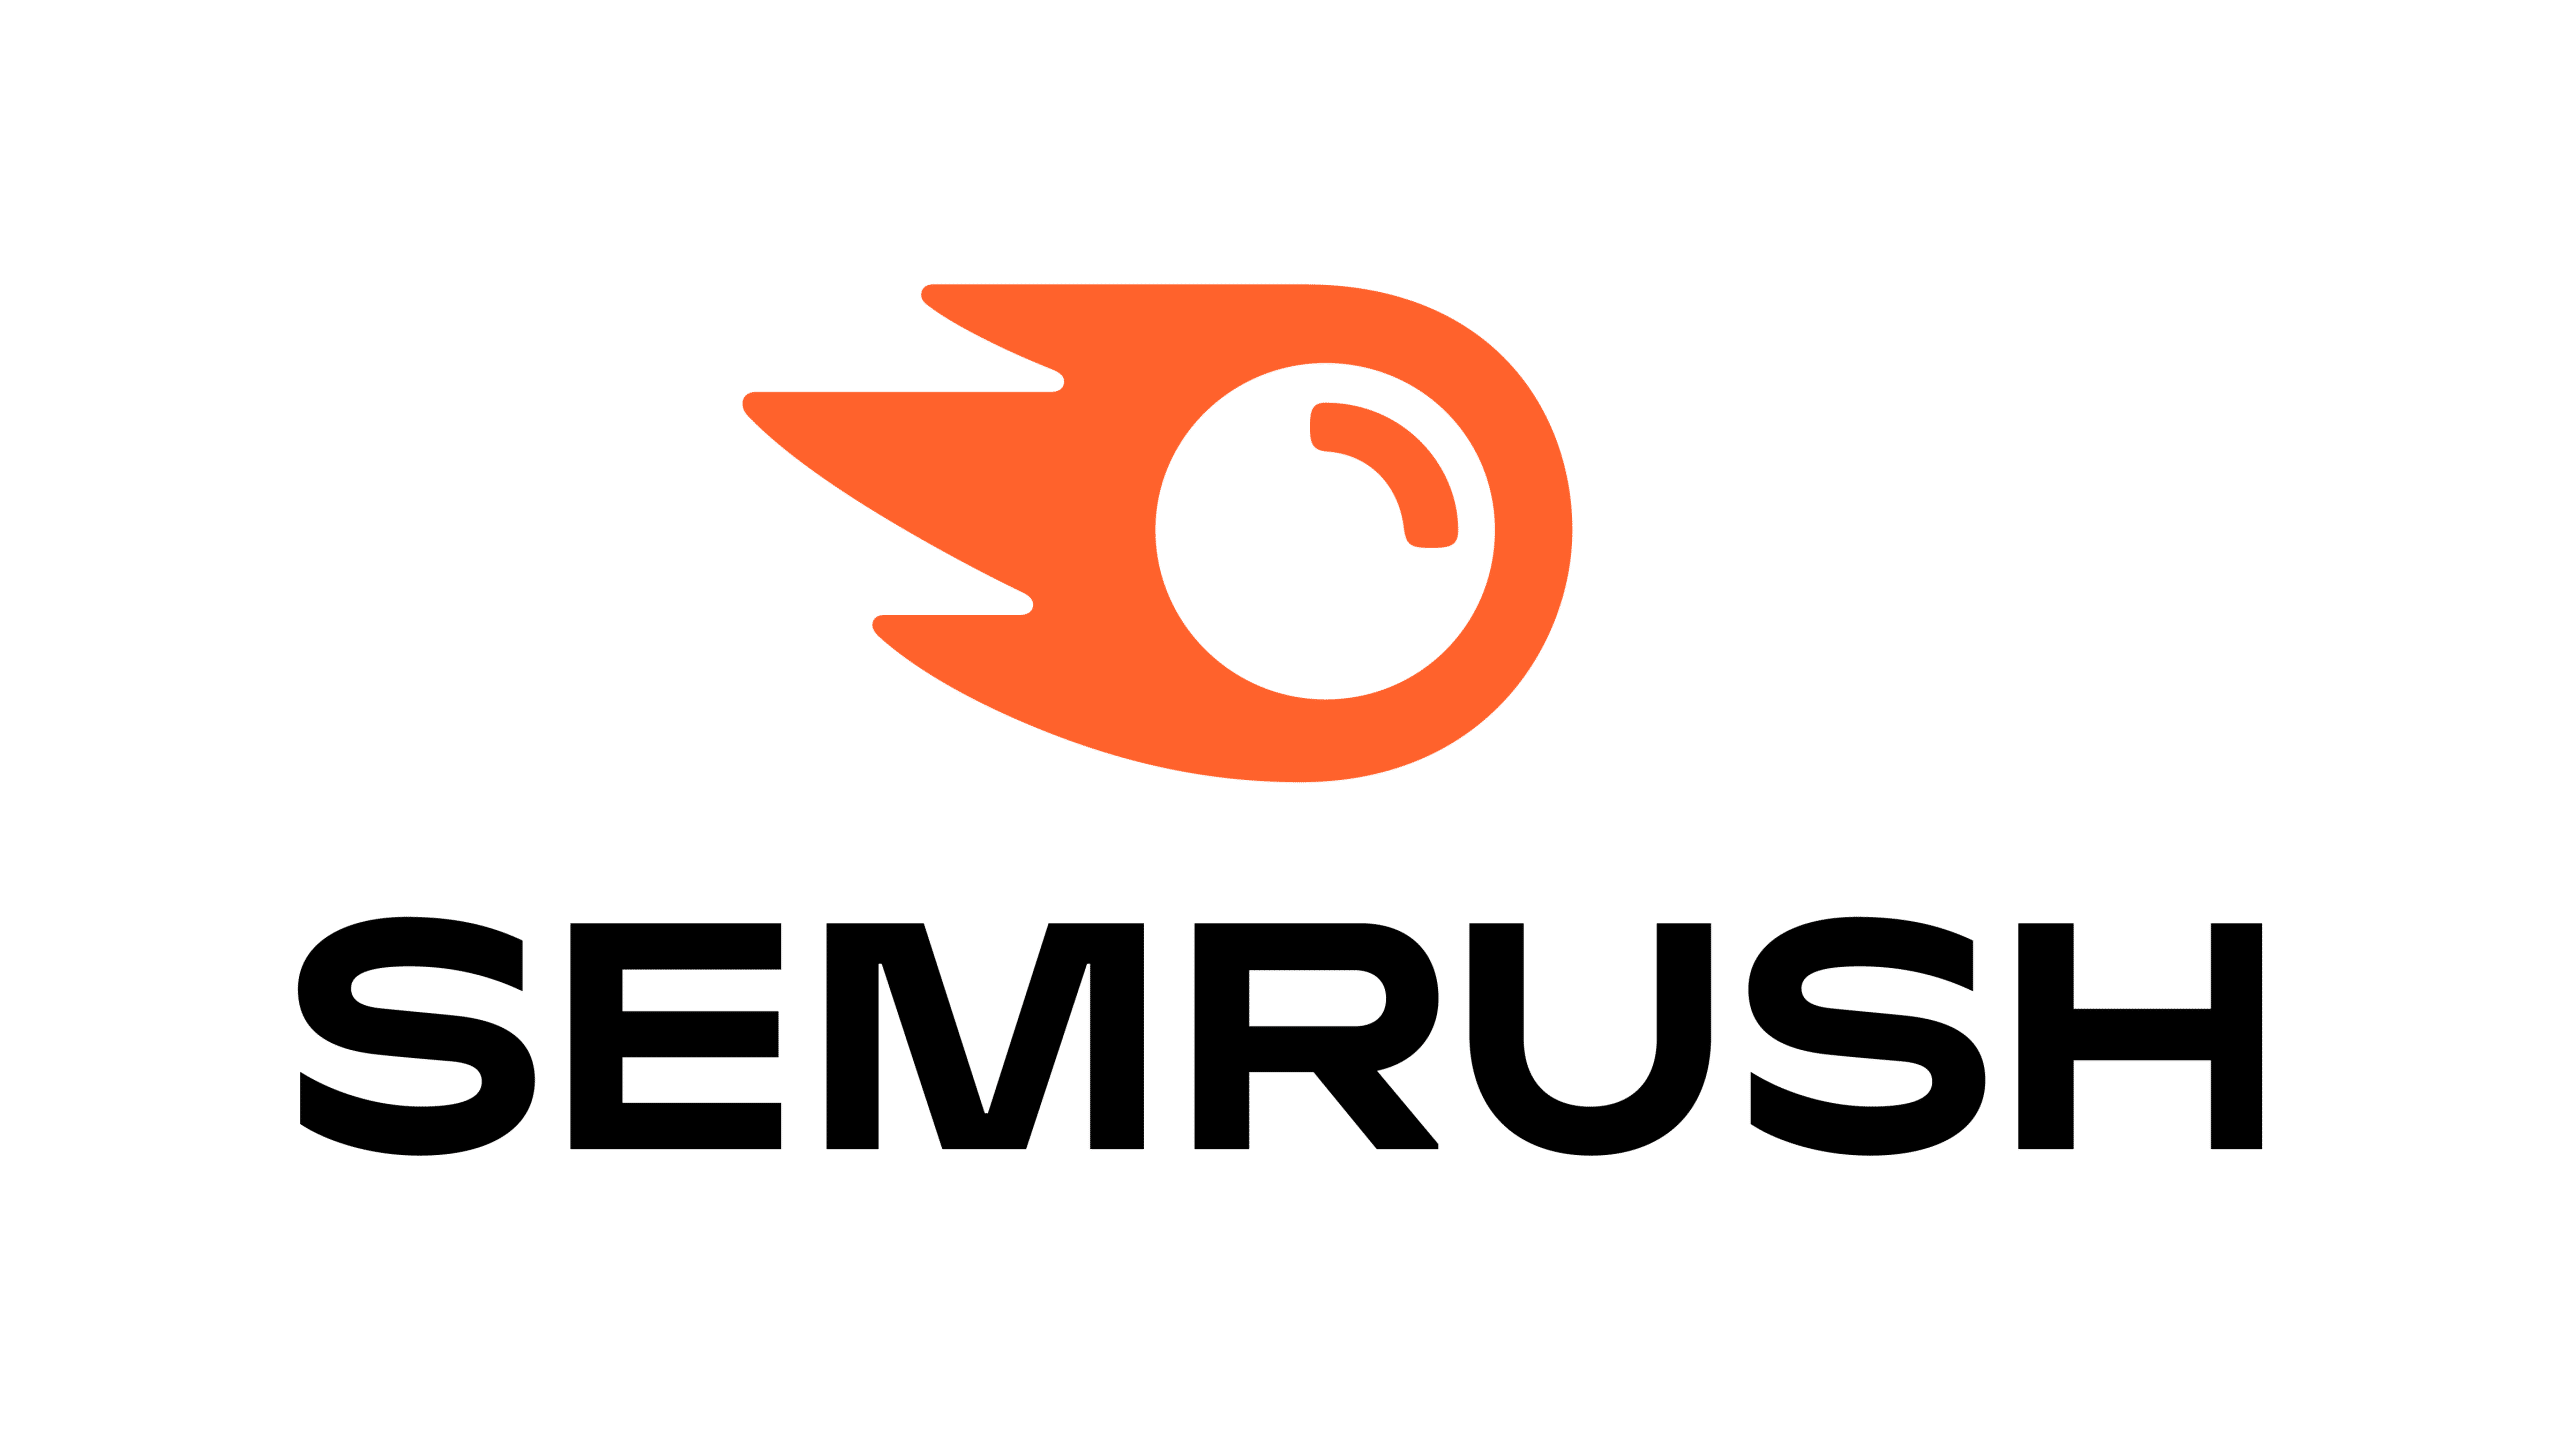 SEMRush Partner Logo